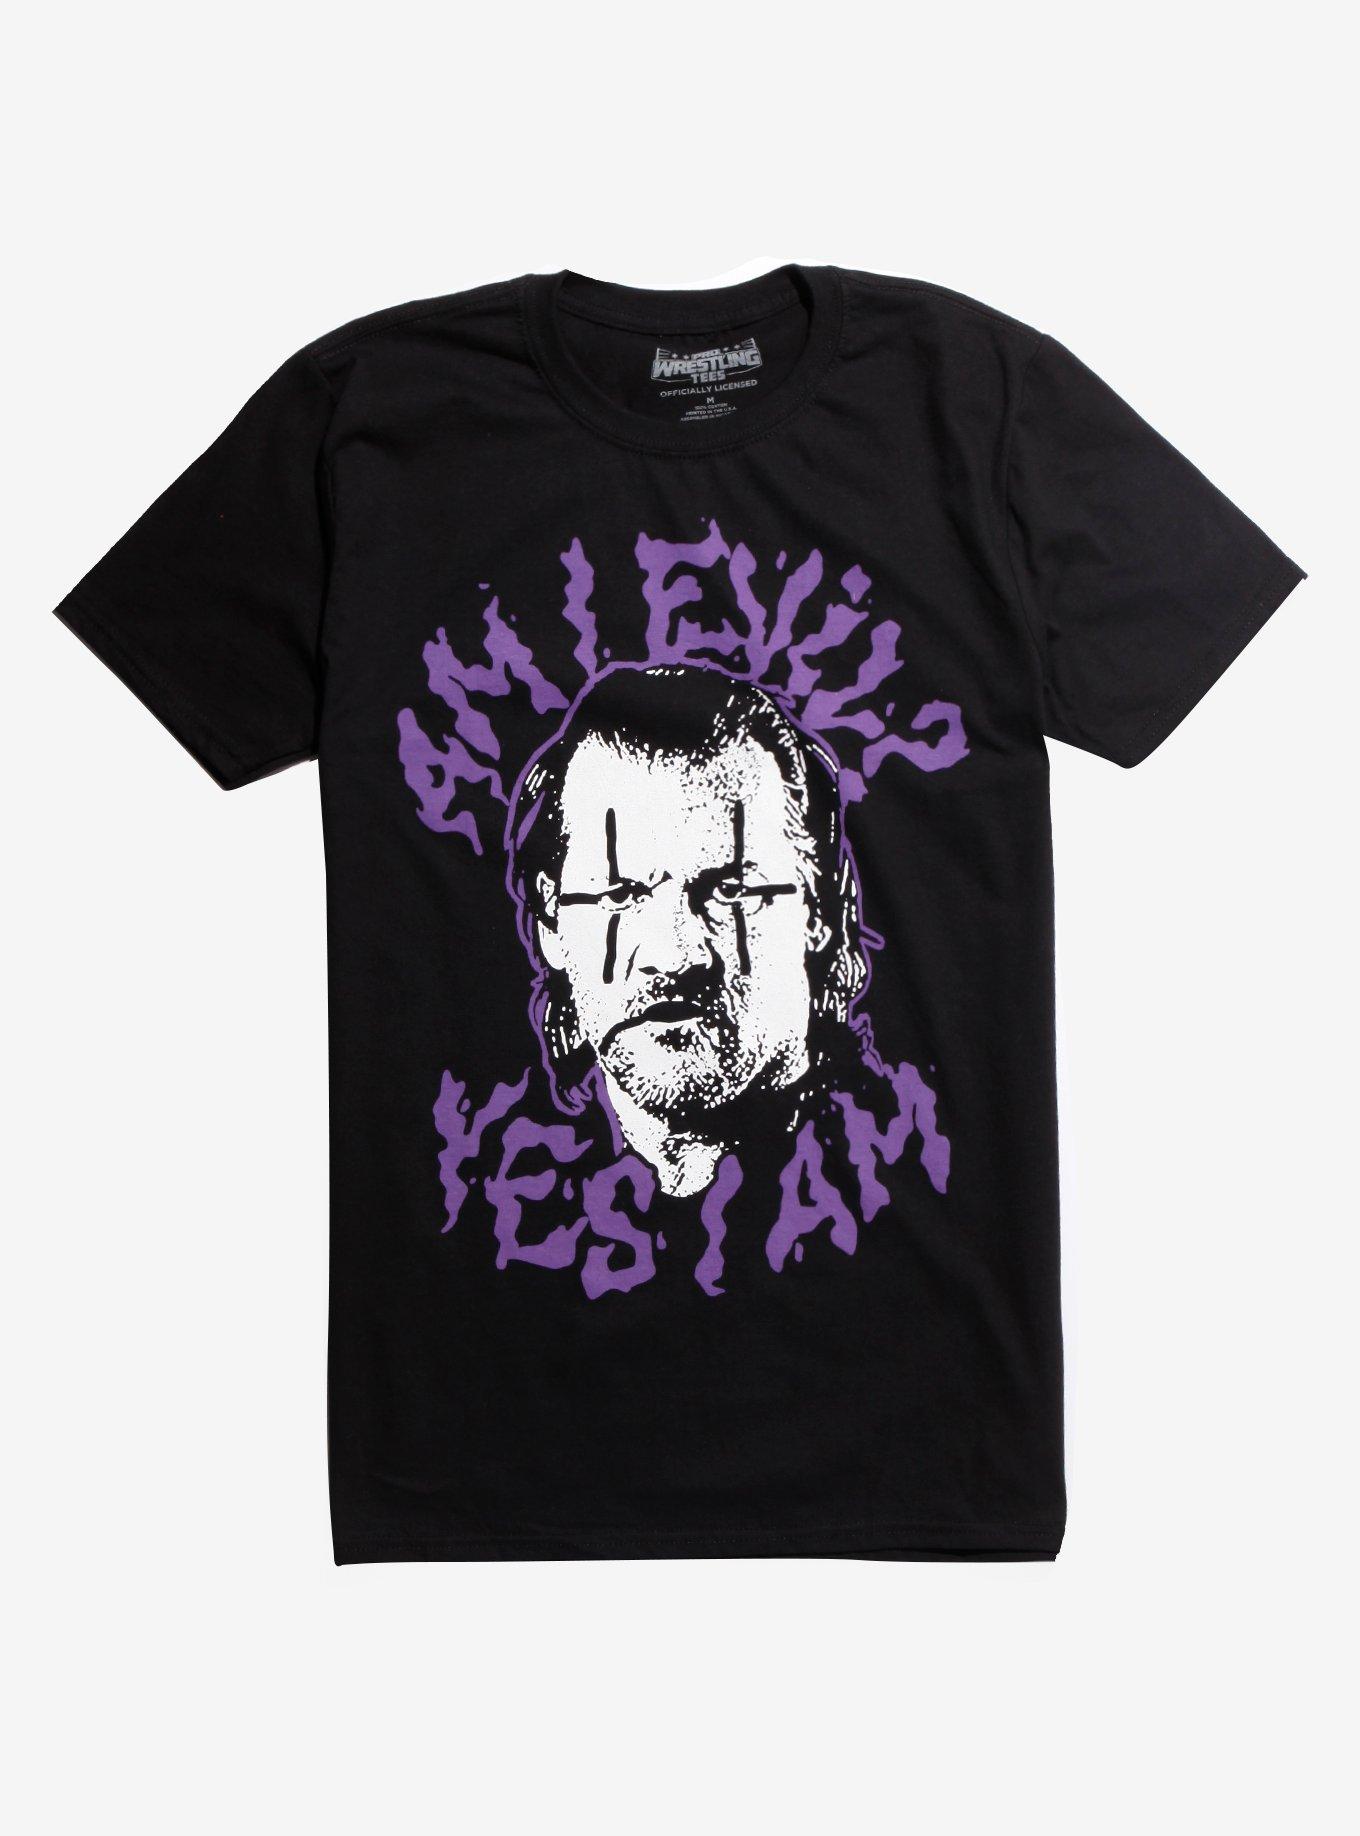 Pro Wrestling Tees Jericho Am I Evil? T-Shirt, BLACK, hi-res